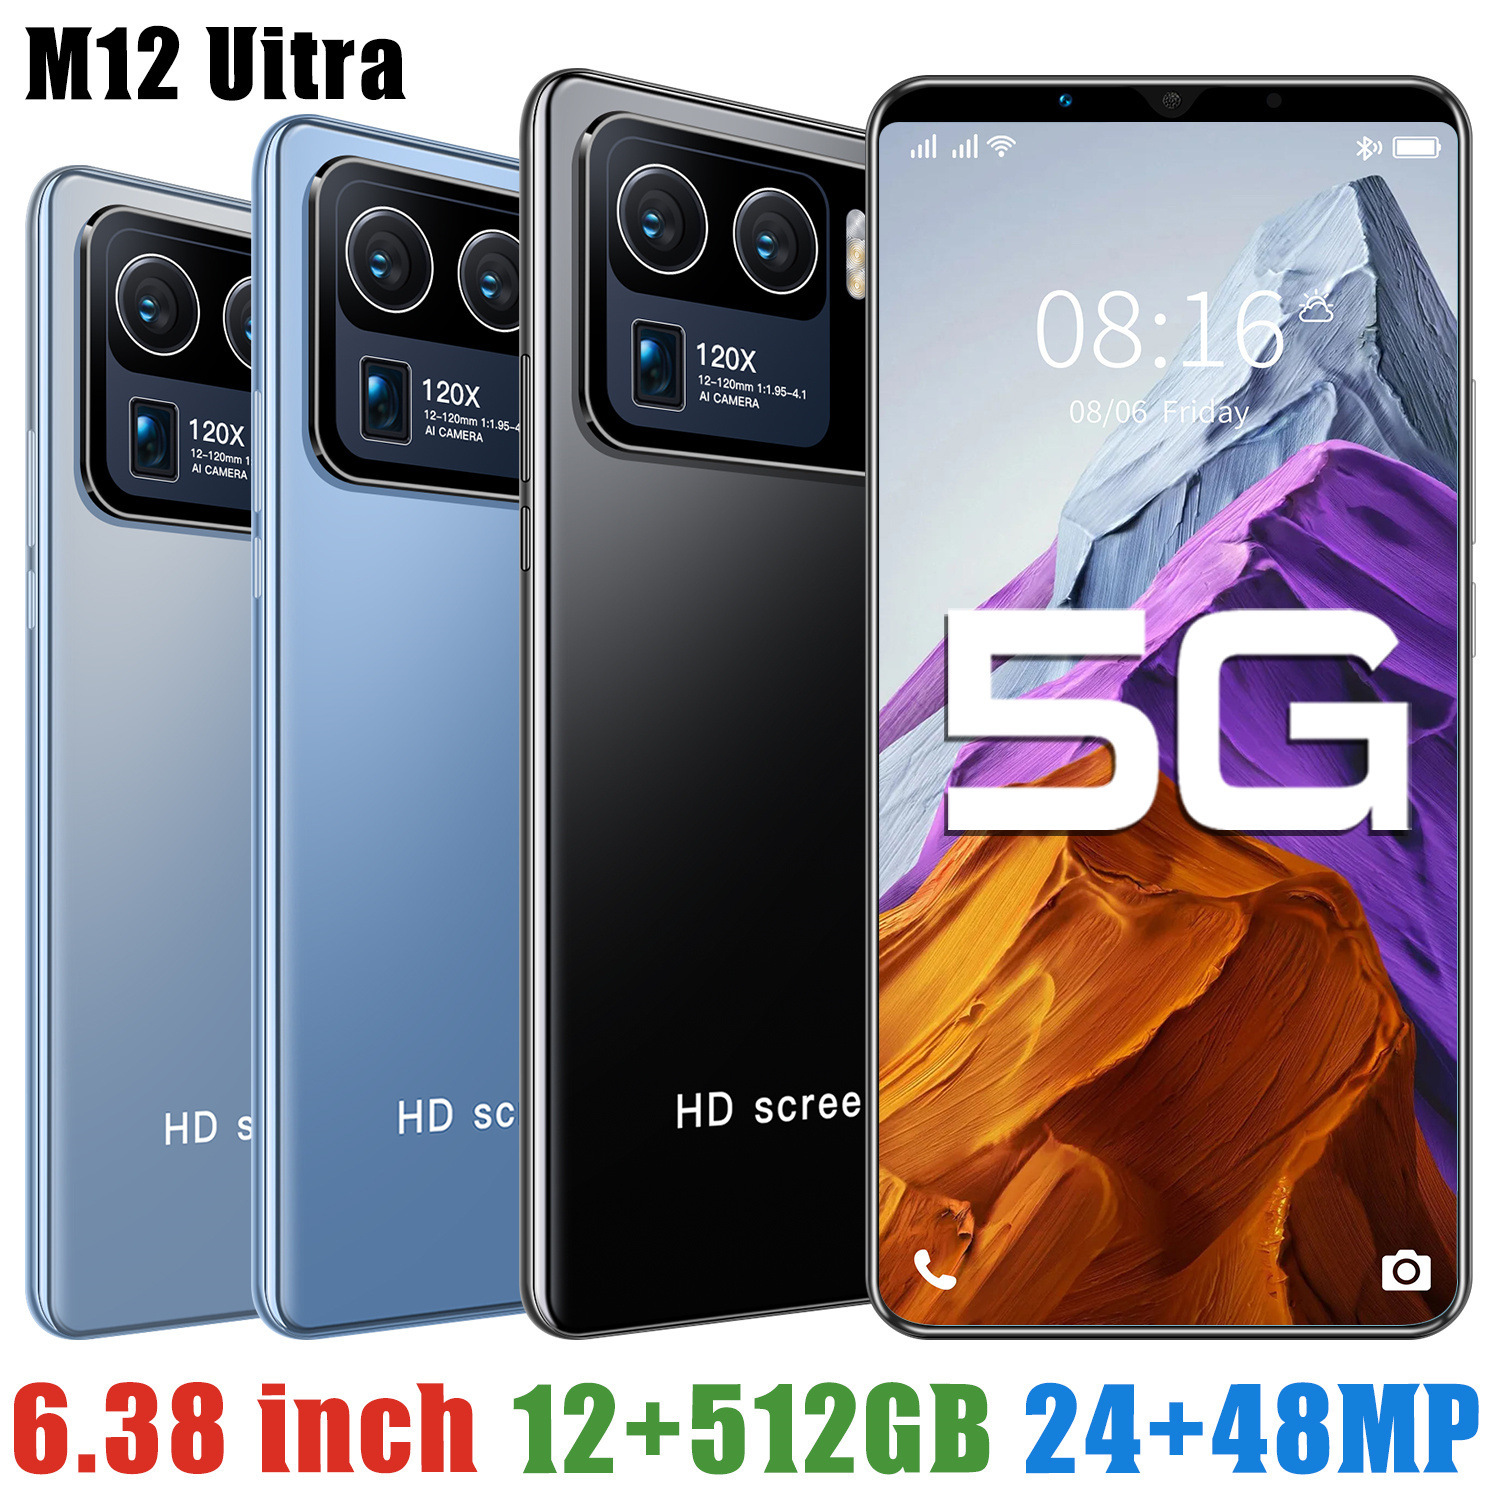 批发新款M12+Uitra智能手机 MTK6580四核M8 i11 S10 S21U智能手机